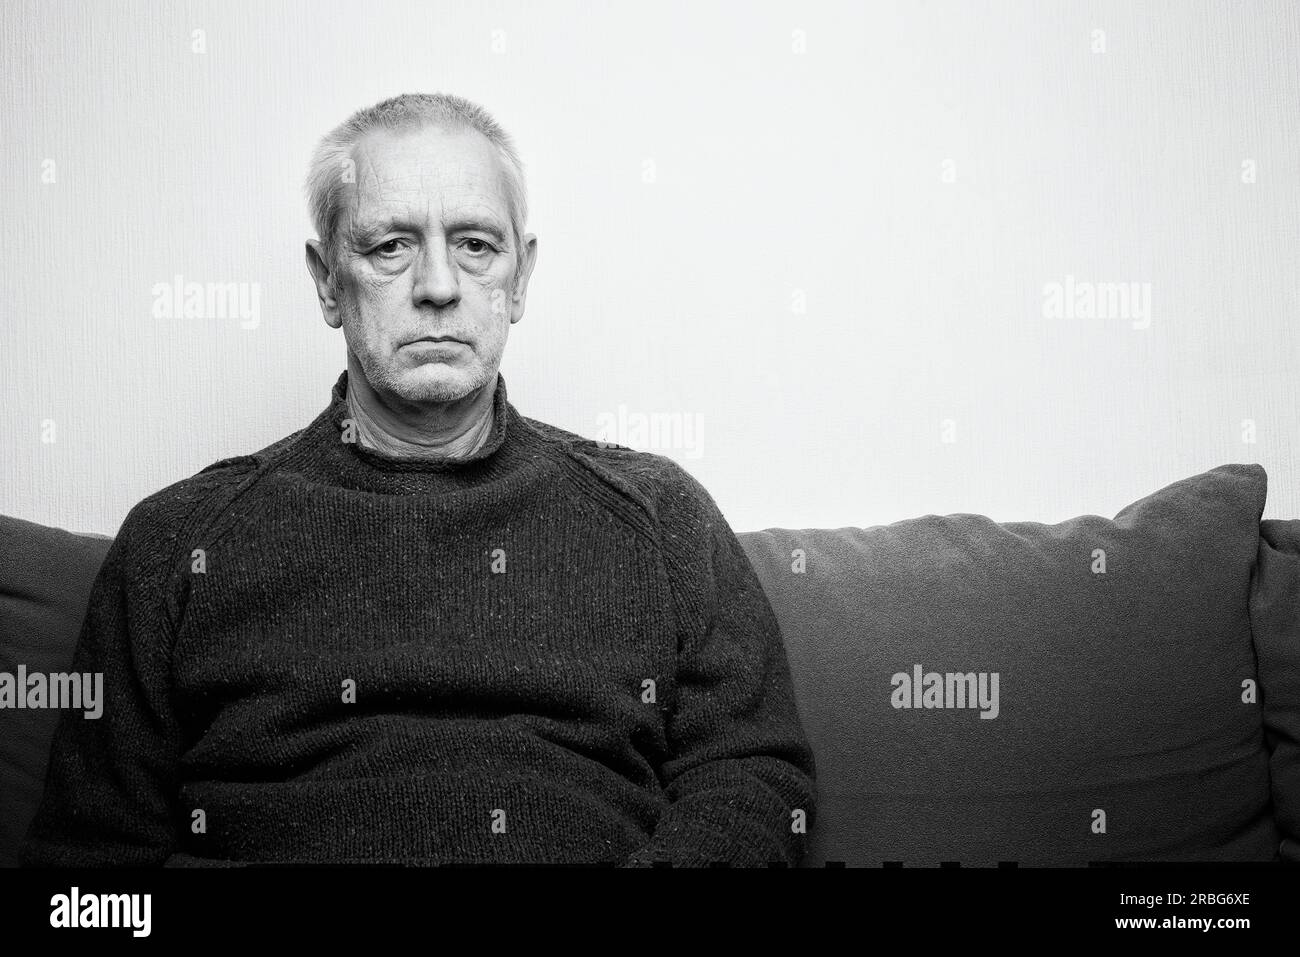 Ritratto drammatico di un uomo adulto triste e depresso seduto su un divano e guardando lo spazio con occhi poco brillanti. Spazio negativo per copiare il testo Foto Stock